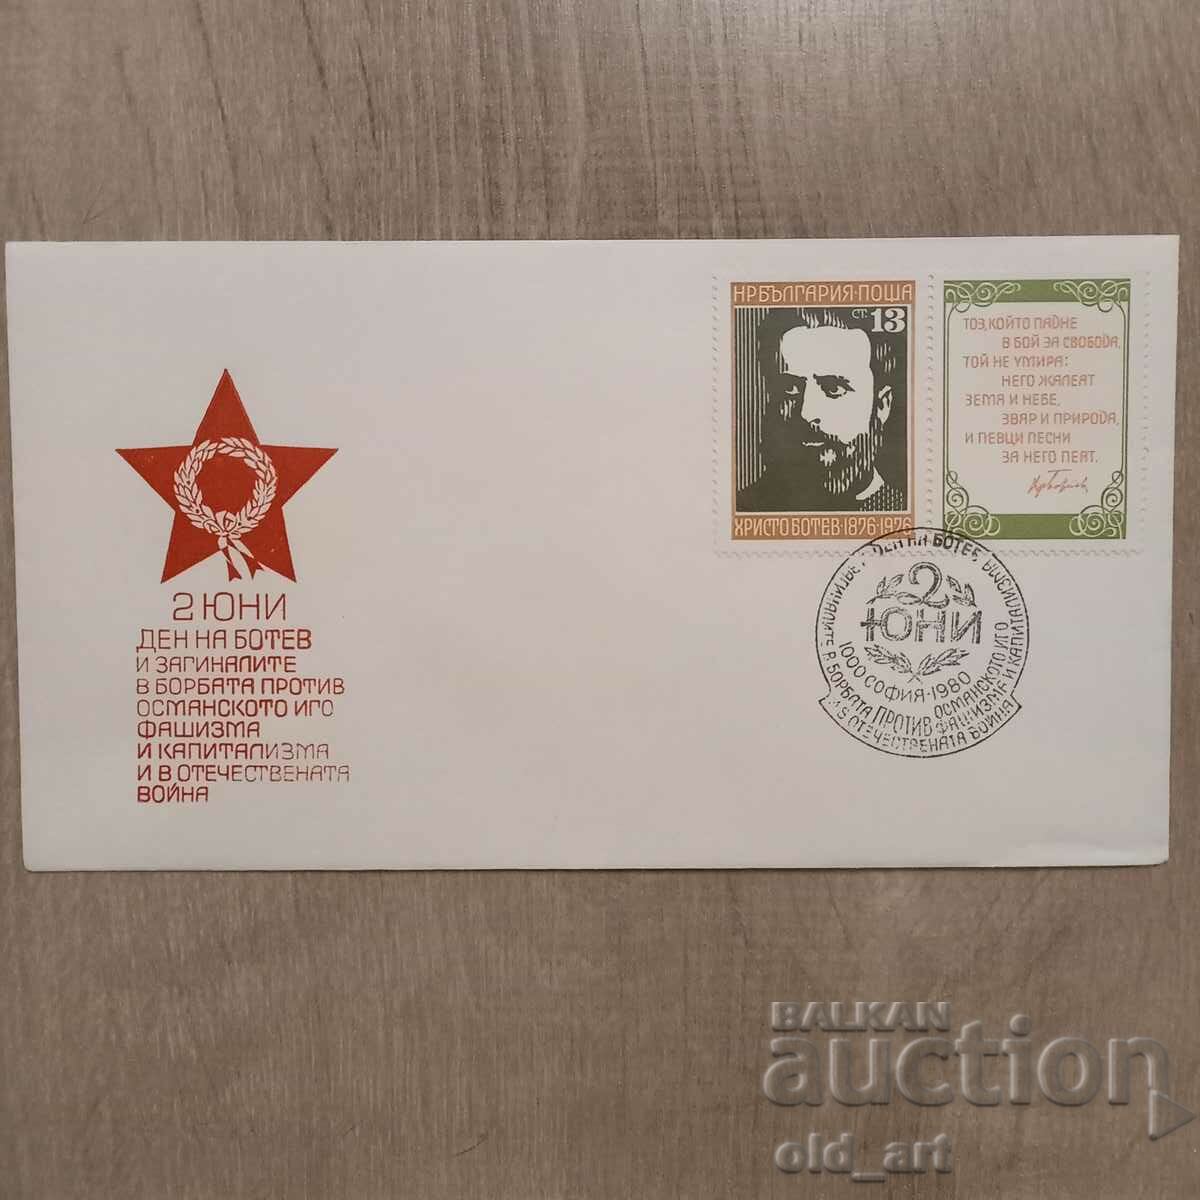 Ταχυδρομικός φάκελος - 2 Ιουνίου Ημέρα Botev